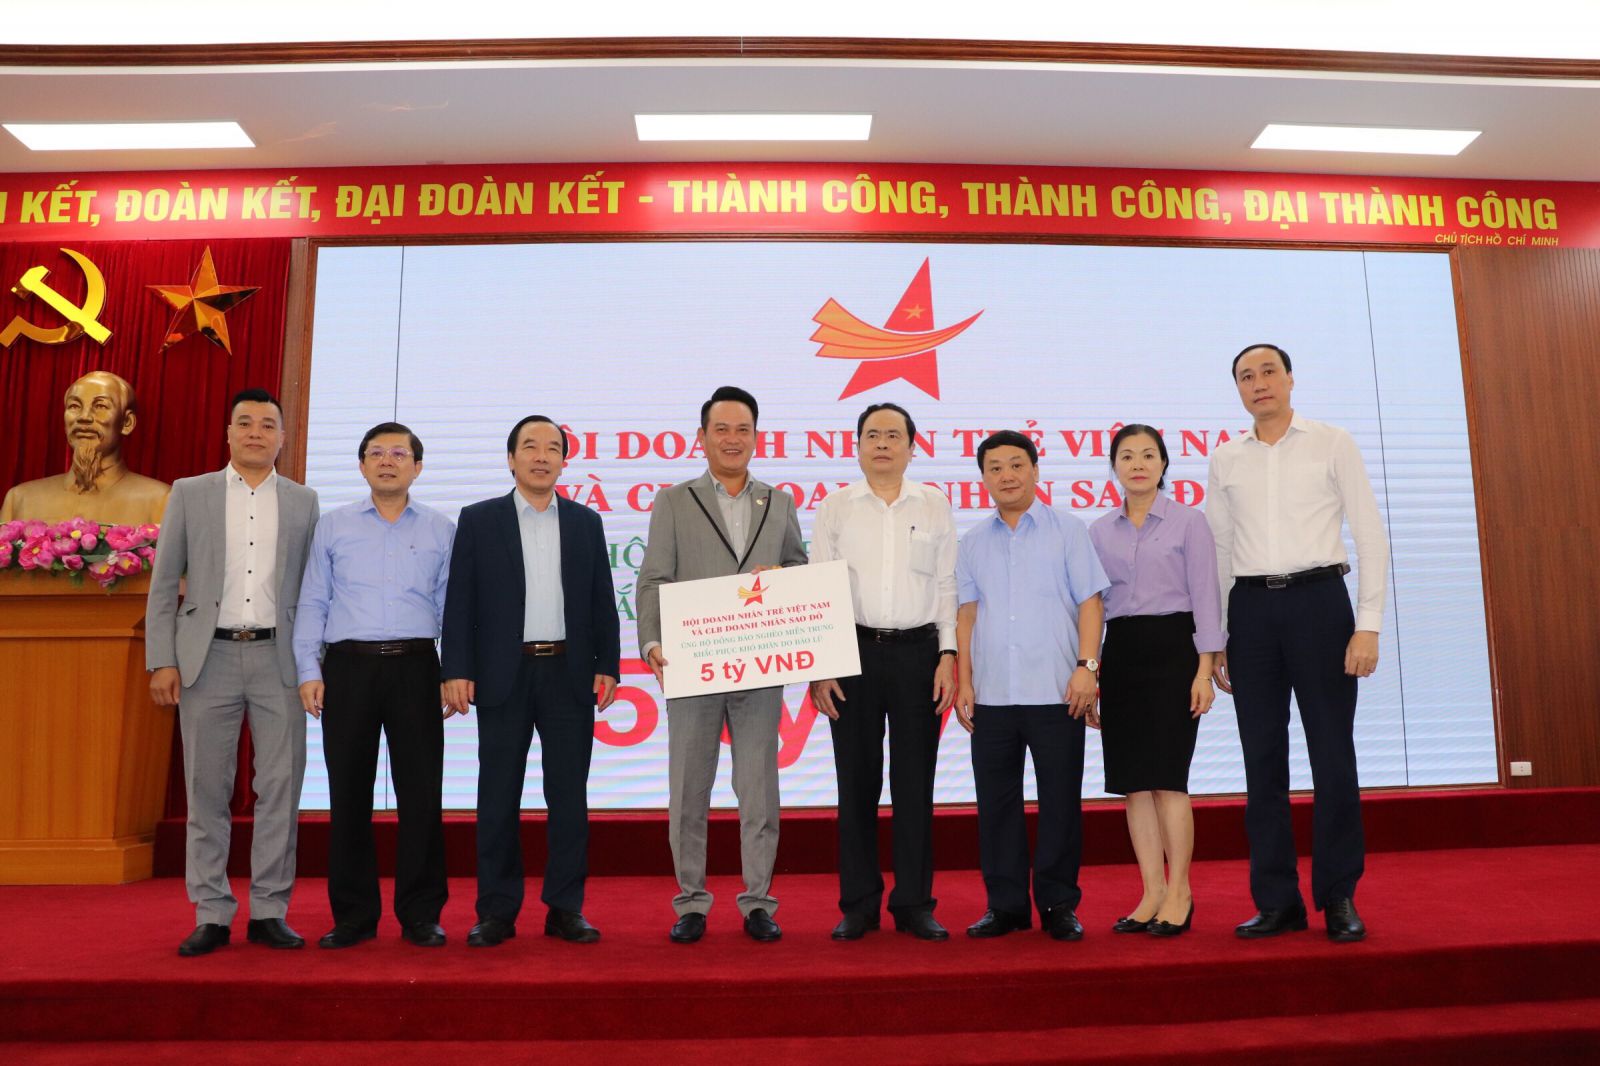 Ông Đặng Hồng Anh, Chủ tịch Hội Doanh nhân trẻ Việt Nam đã đại diện cho Hội và Câu lạc bộ Doanh nhân Sao Đỏ trao biển ủng hộ 5 tỷ đồng ủng hộ đồng bào miền Trung 